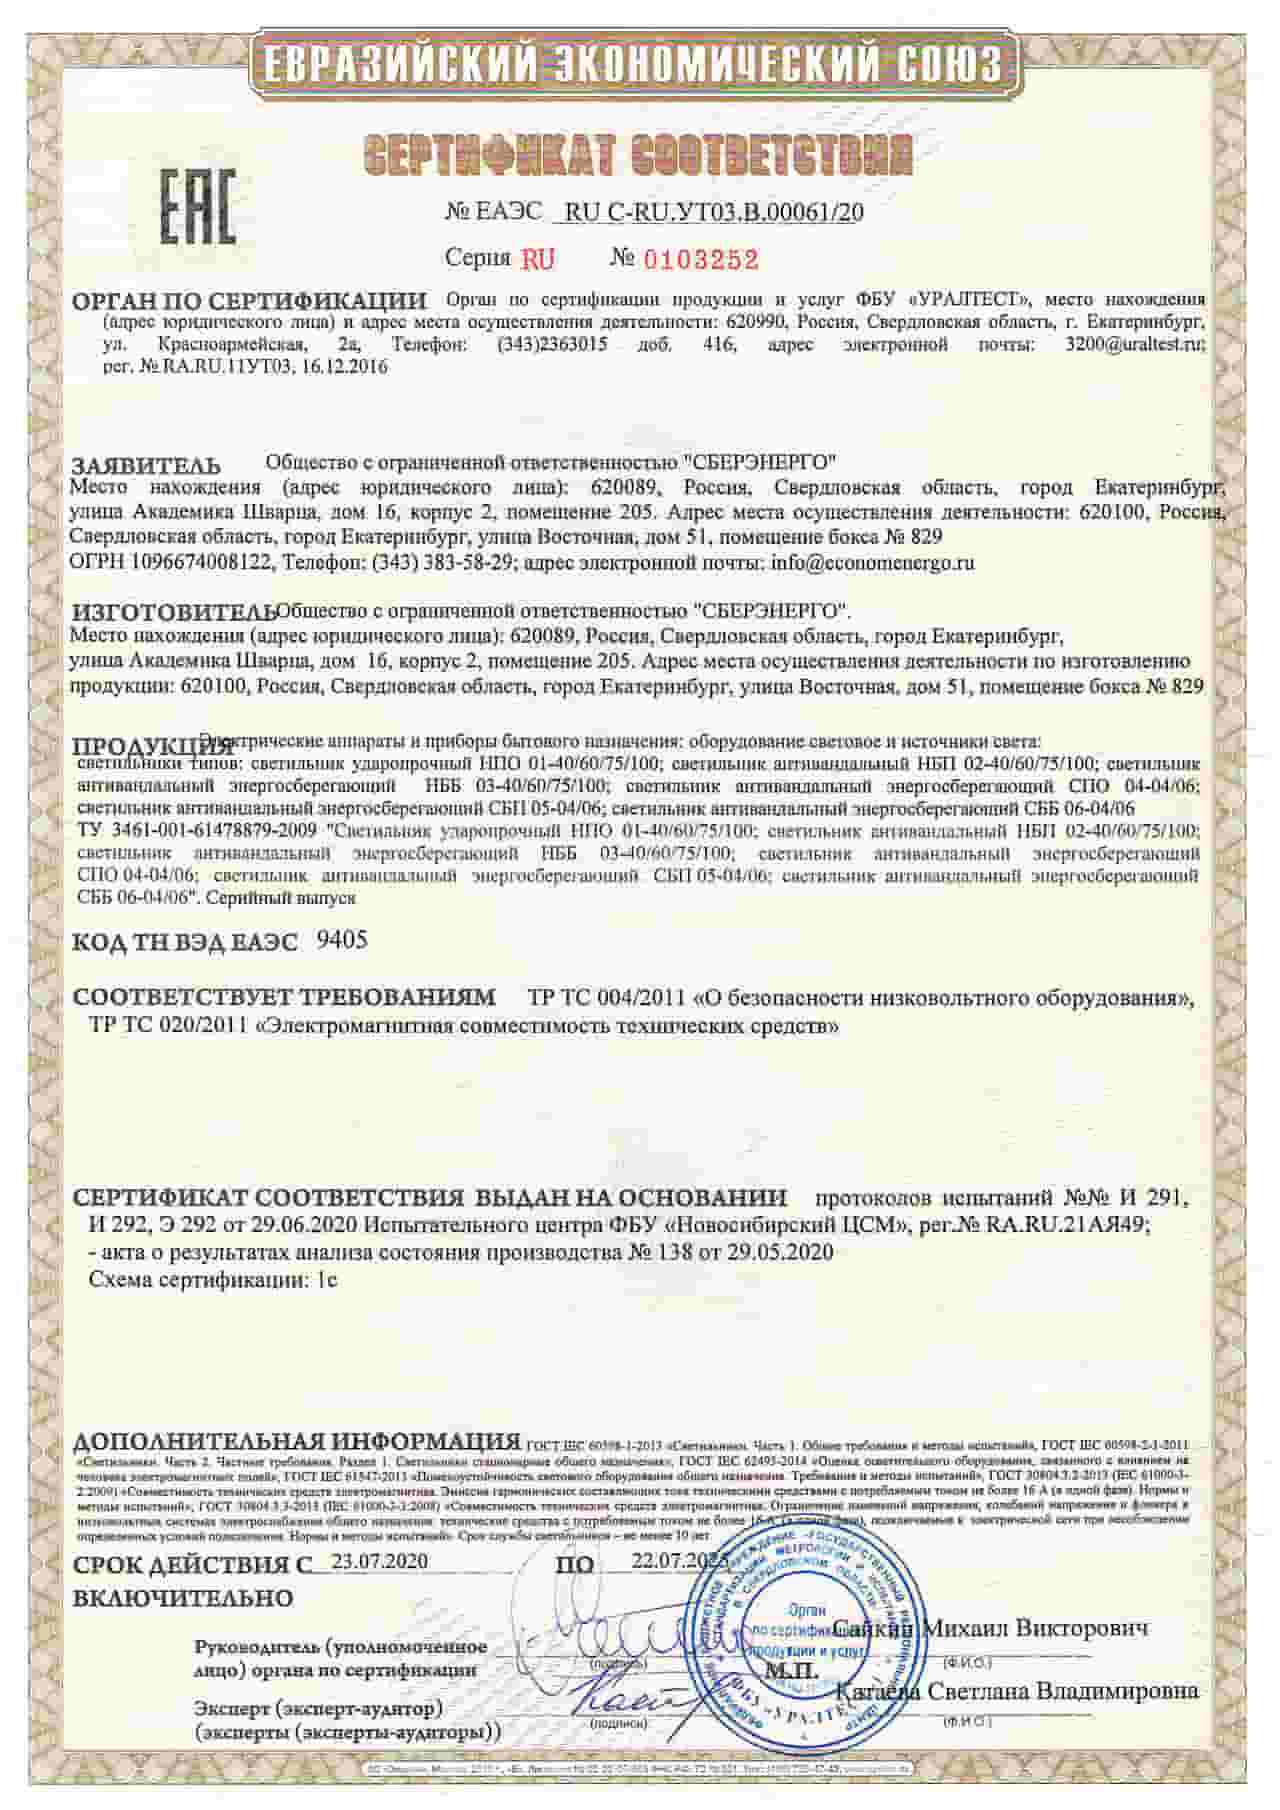 Сертификат соответствия ЕАЭС СБЕРЭНЕРГО